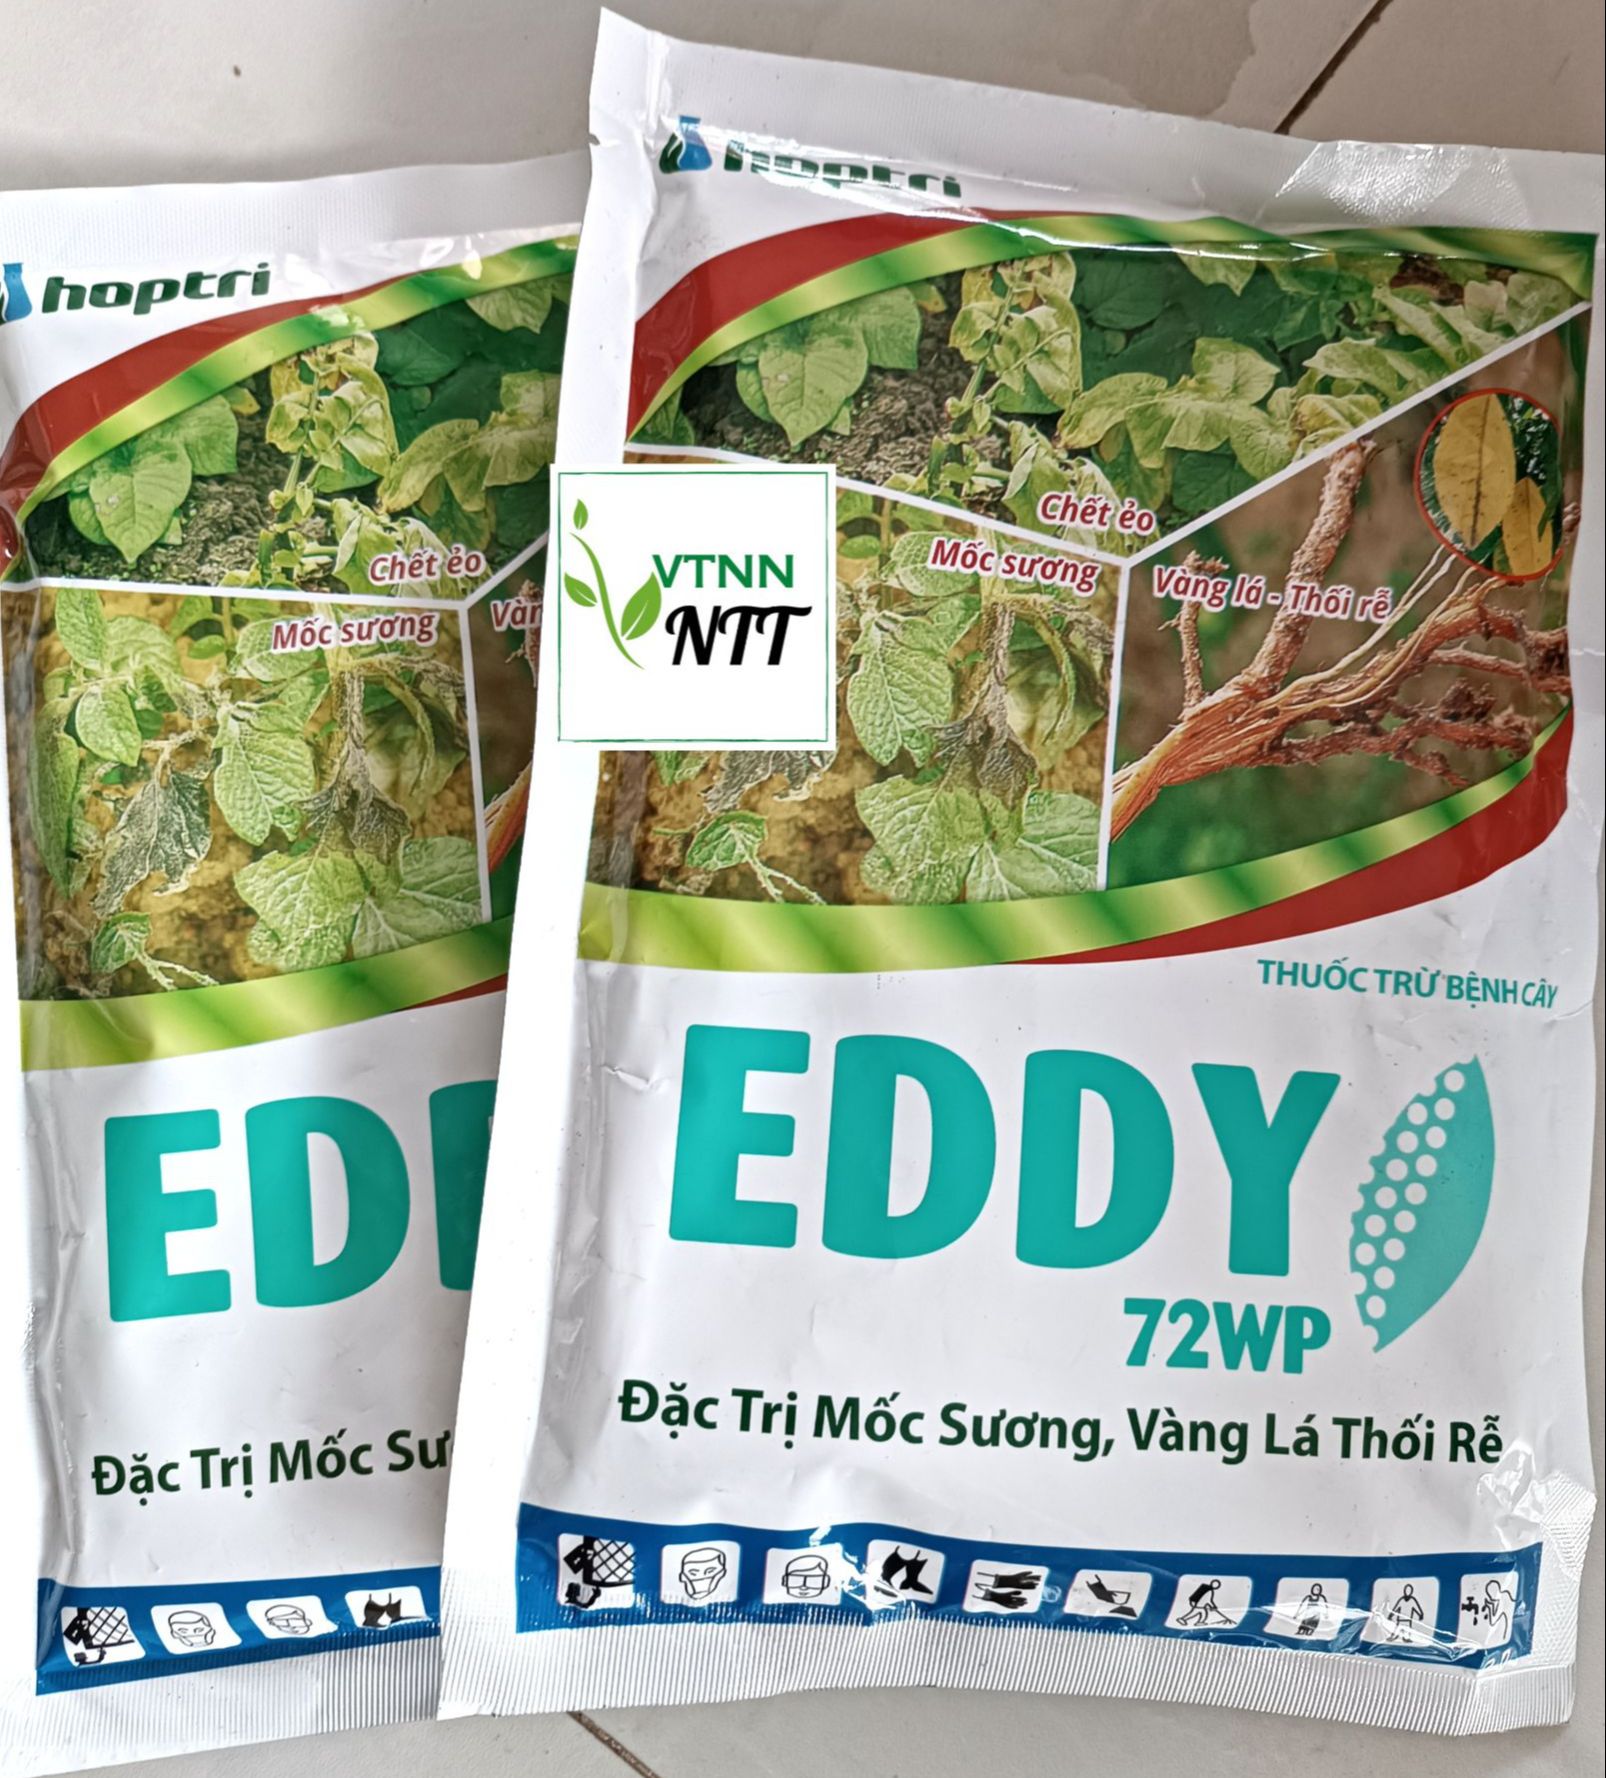 Thuốc trừ bệnh cây EDDY 72WP gói 300g